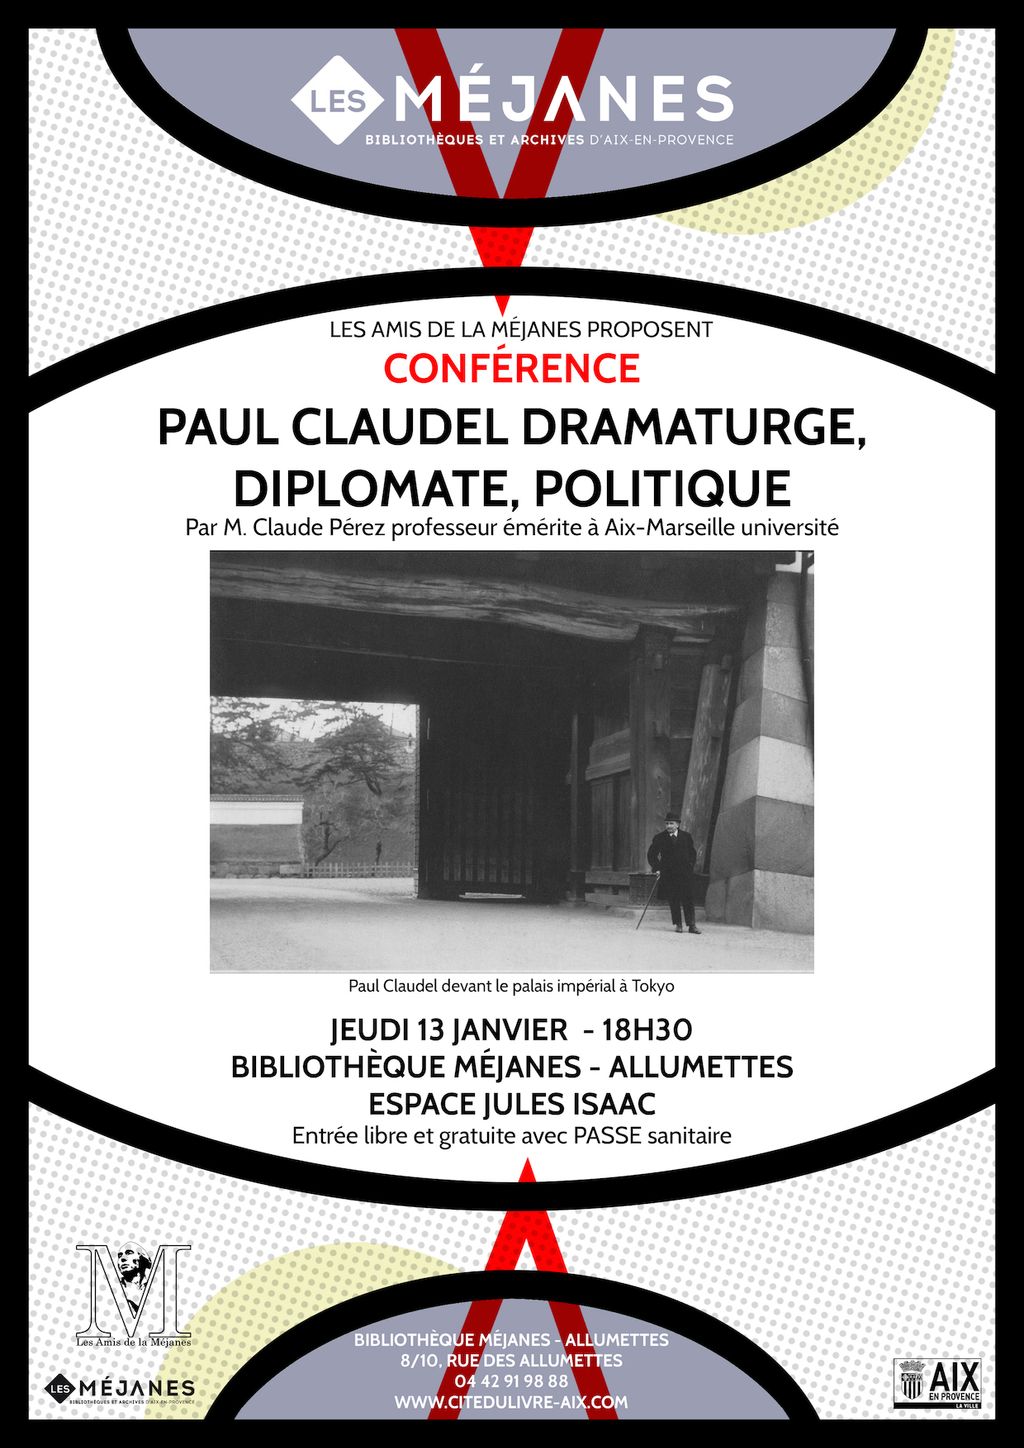 Paul Claudel dramaturge, diplomate, politique